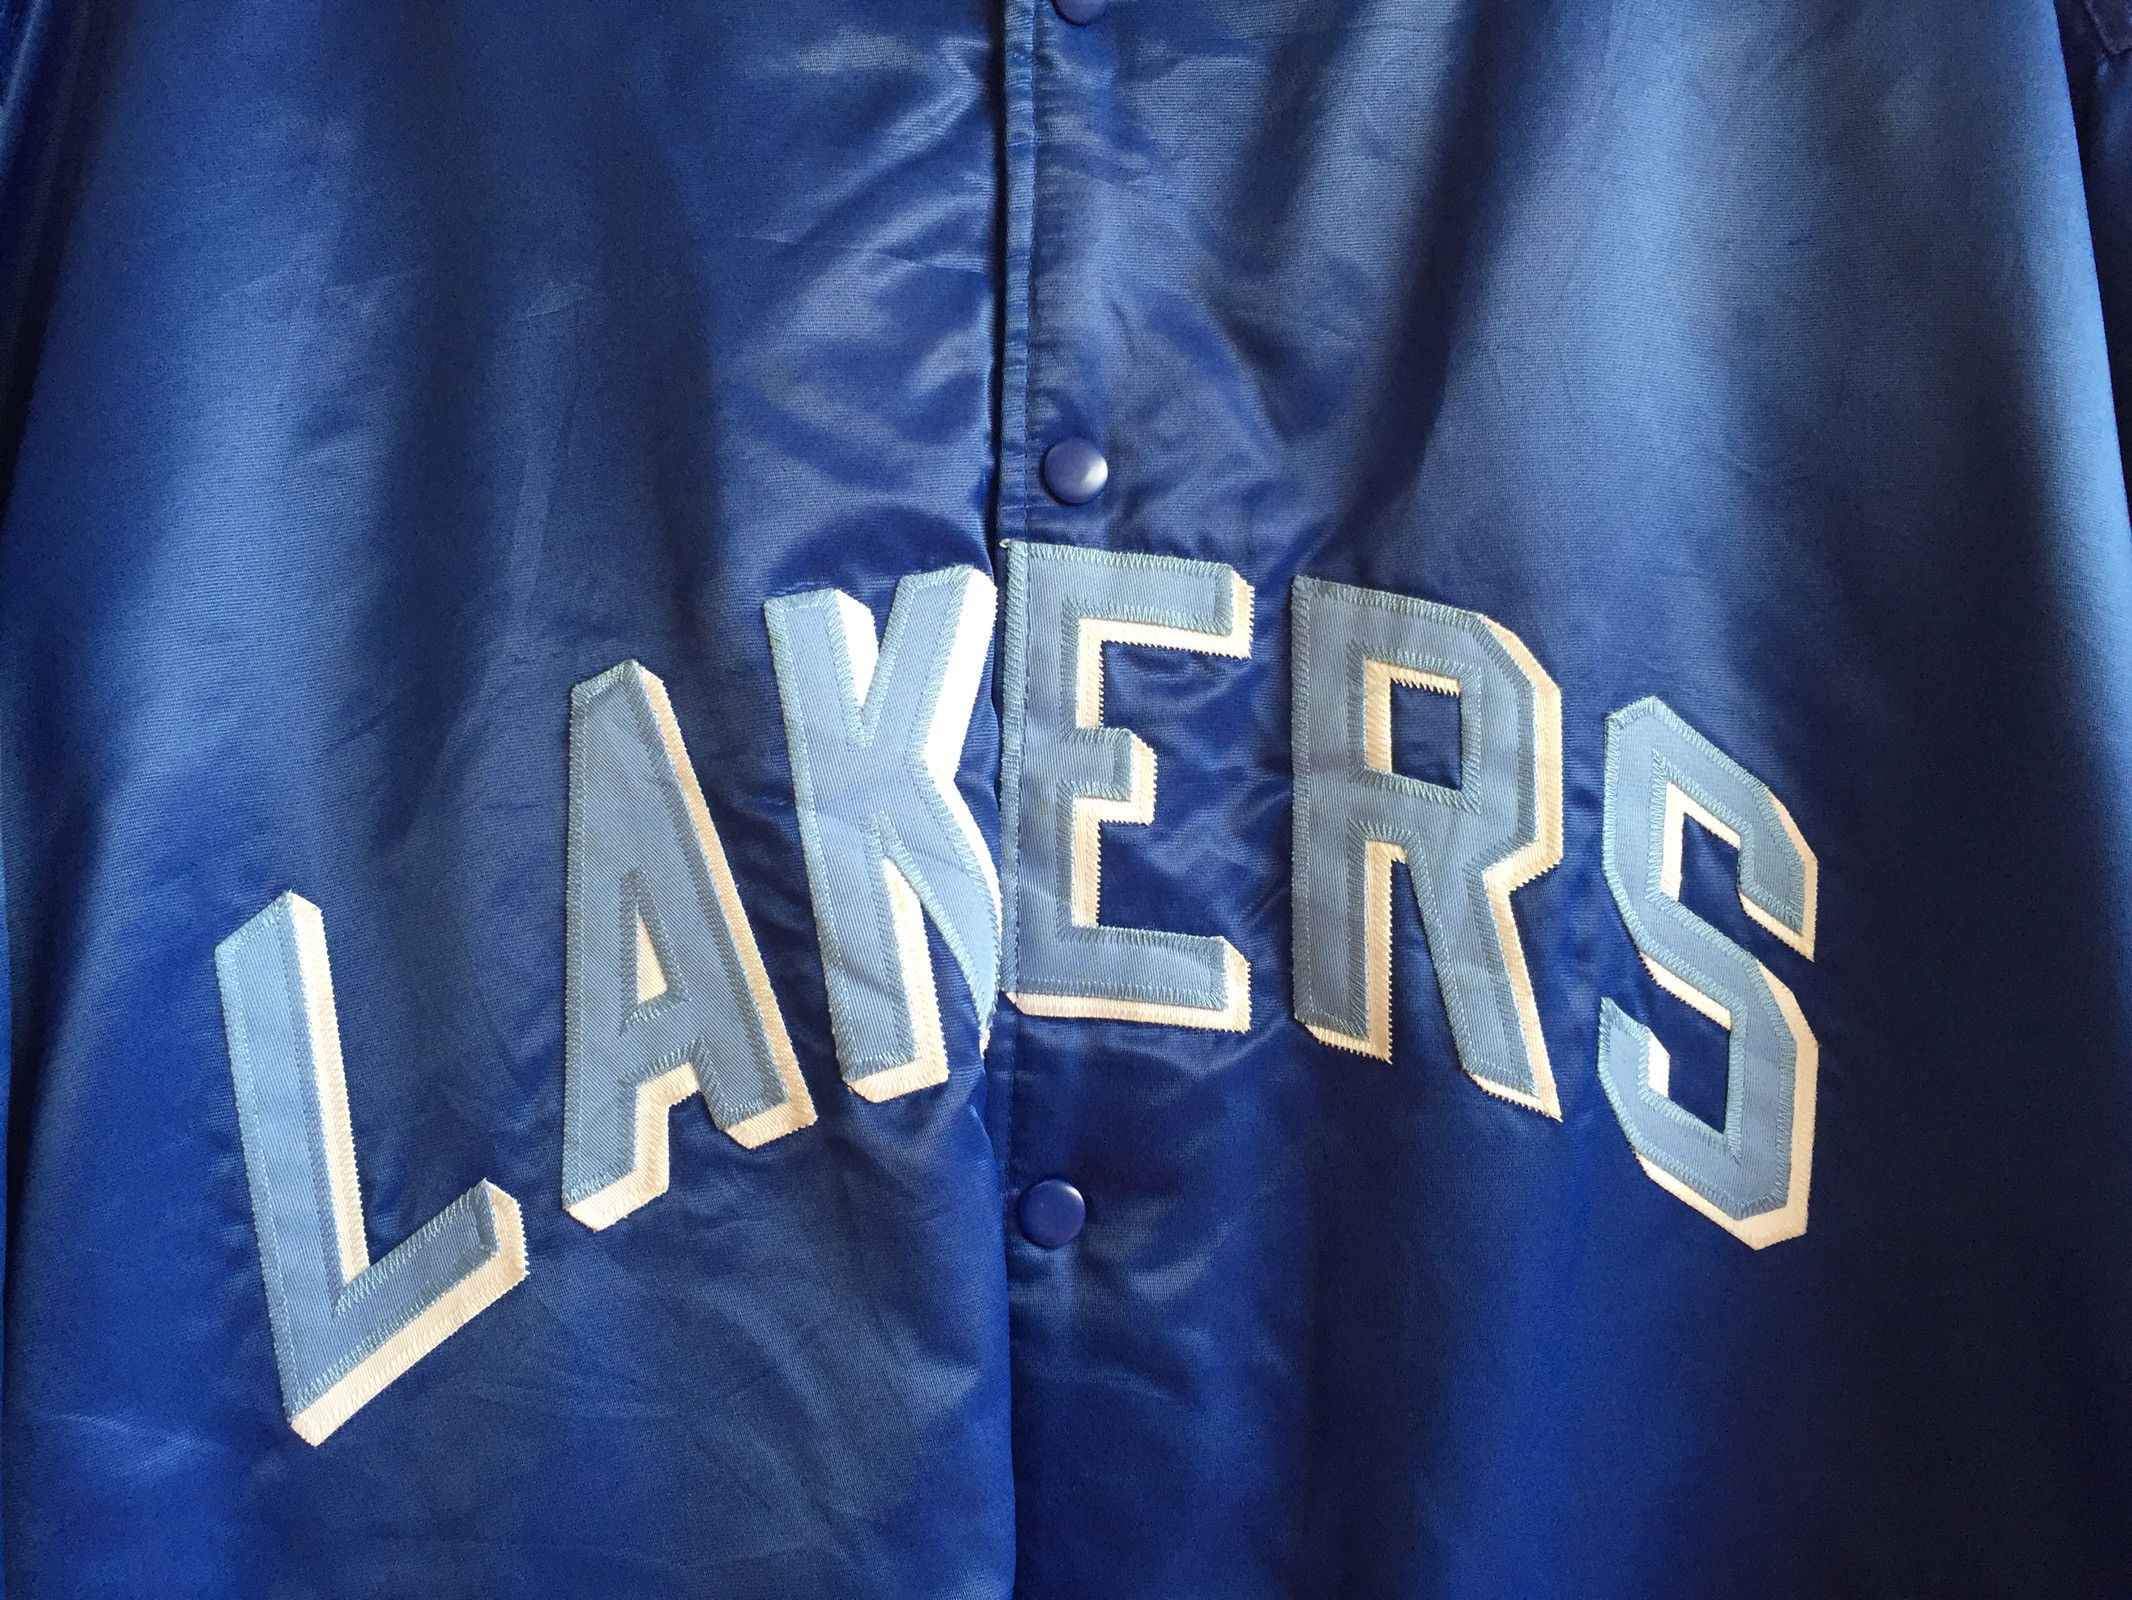 Vintage •Vintage 90s Nba Lakers Varsity Jacket Blue Colour Nba Lakers Majestic Varsity Jacket Hardwood Classic Nba Lakers Jacket XXL Lakers Jacket Size US XXL / EU 58 / 5 - 4 Thumbnail